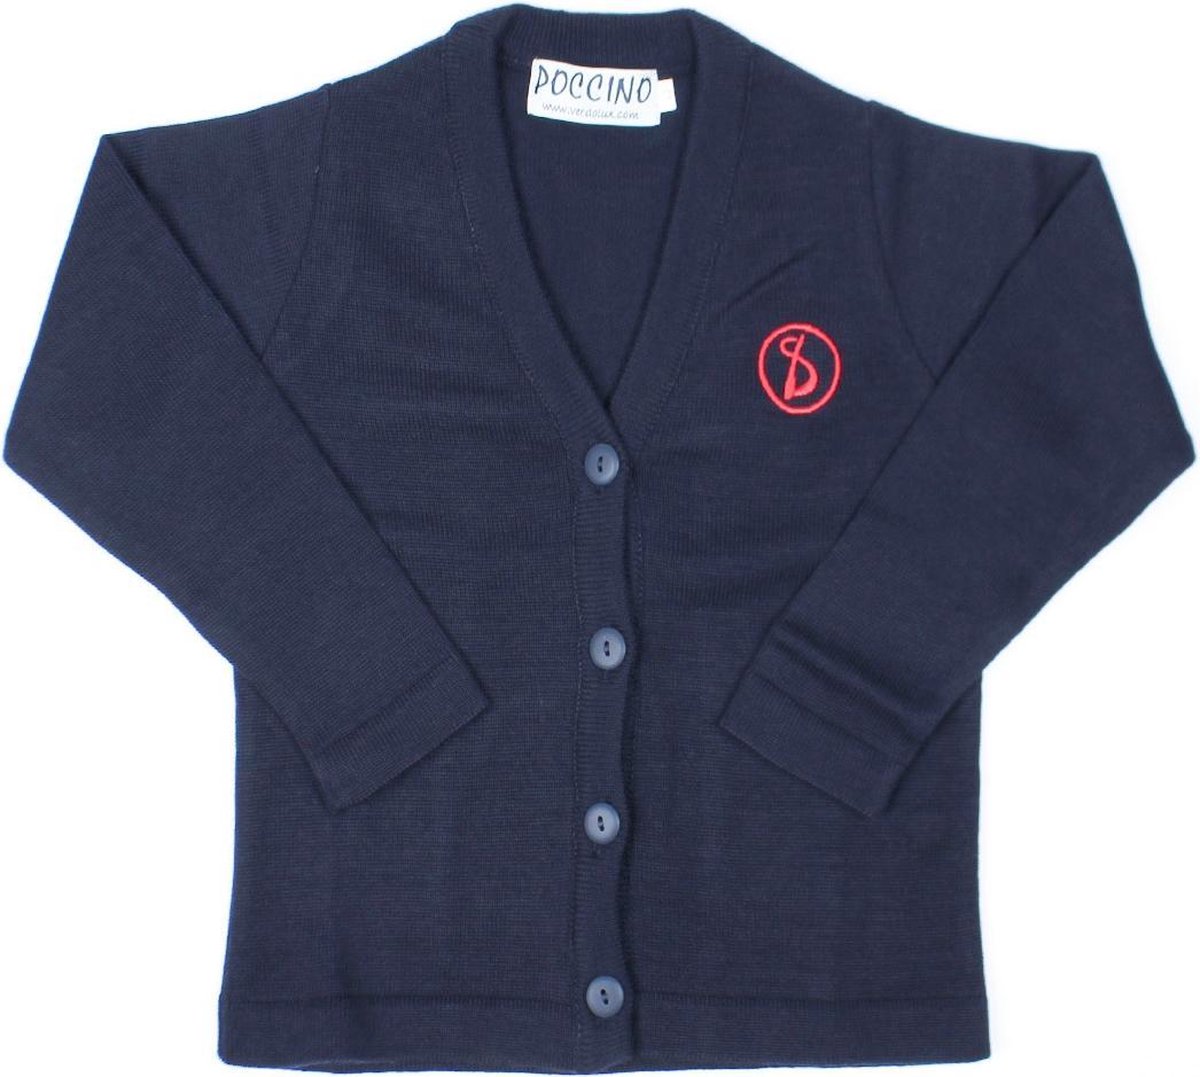 Sint-Ludgardis schooluniform - Vest meisje - Donkerblauw - Maat 8 jaar